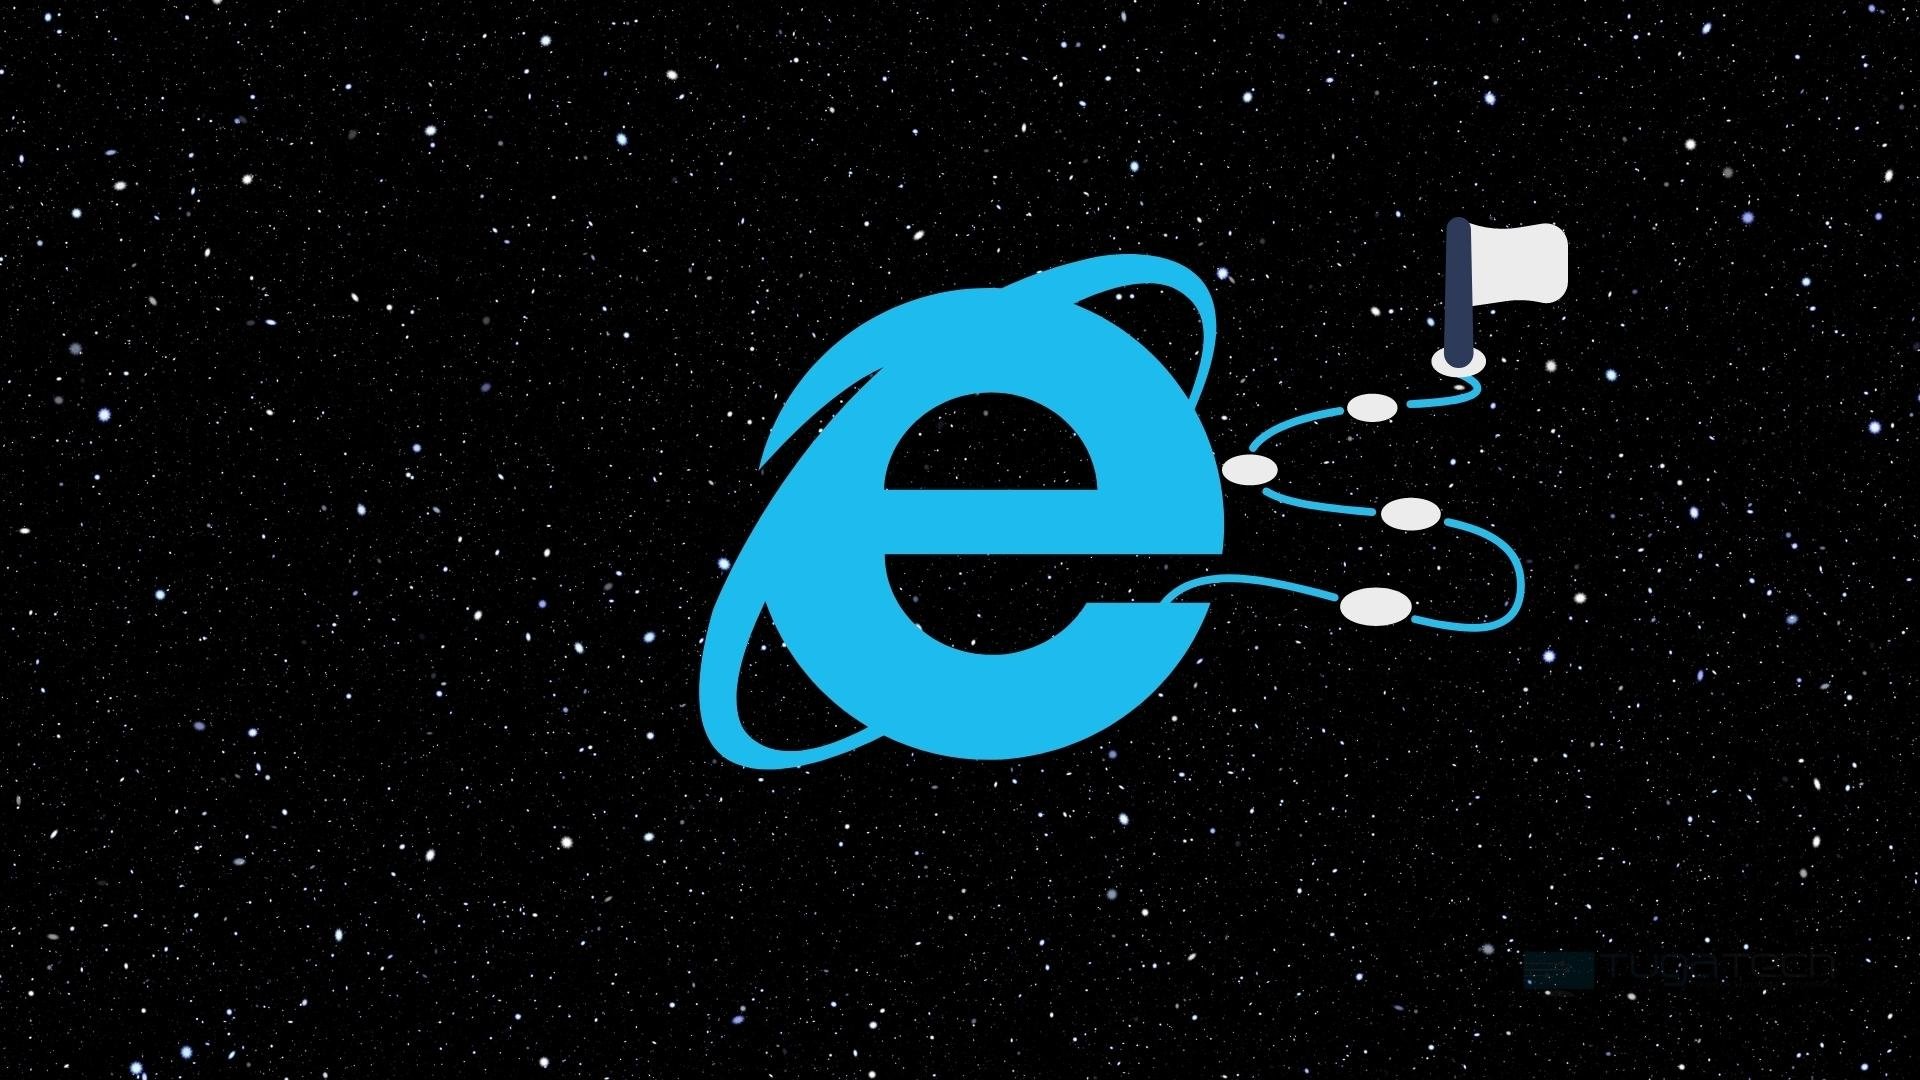 Internet Explorer final